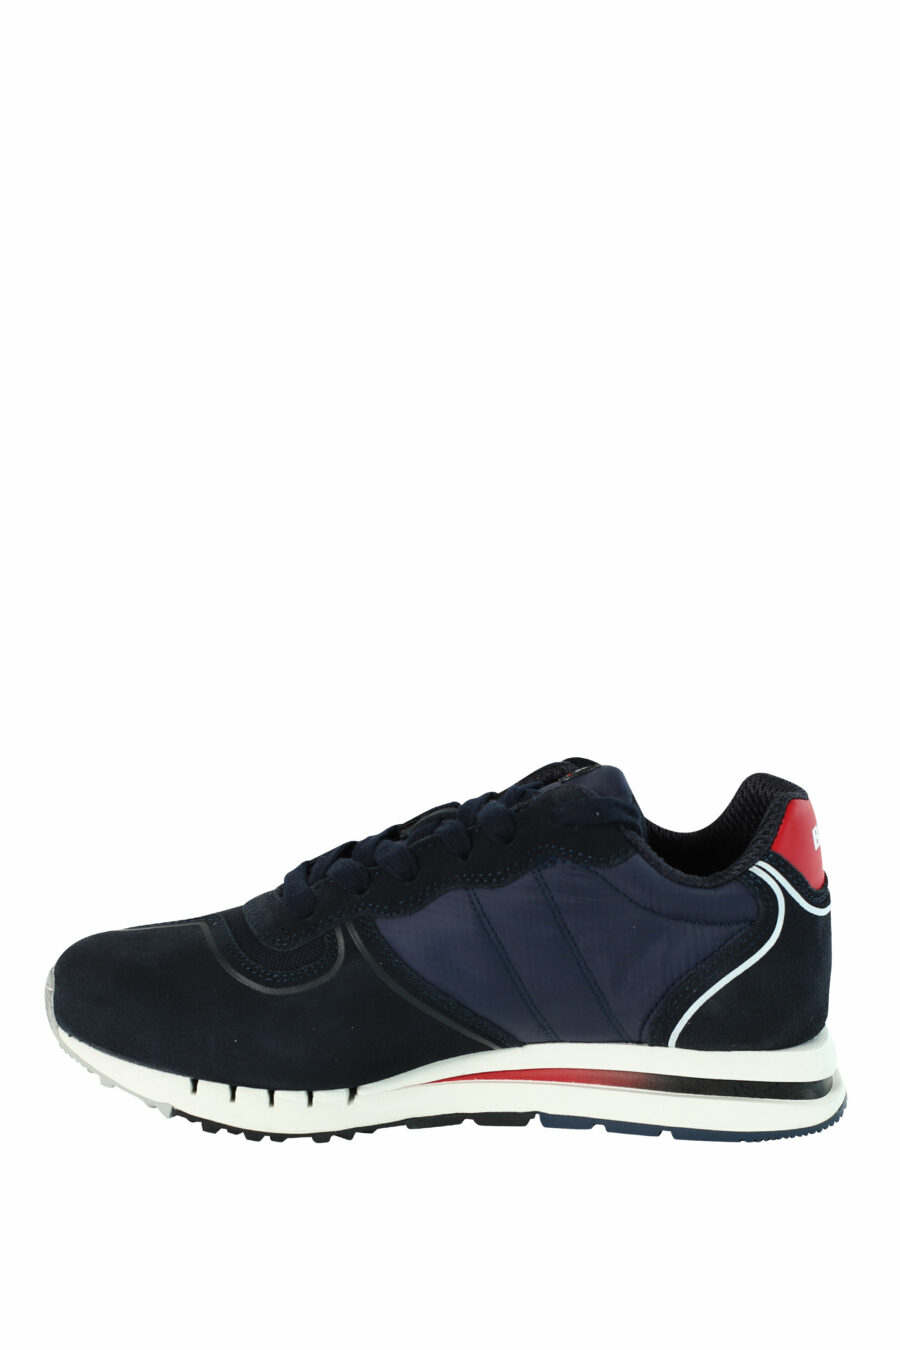 Sapatos "QUARTZ" azuis com pormenores vermelhos - 8058156499454 3